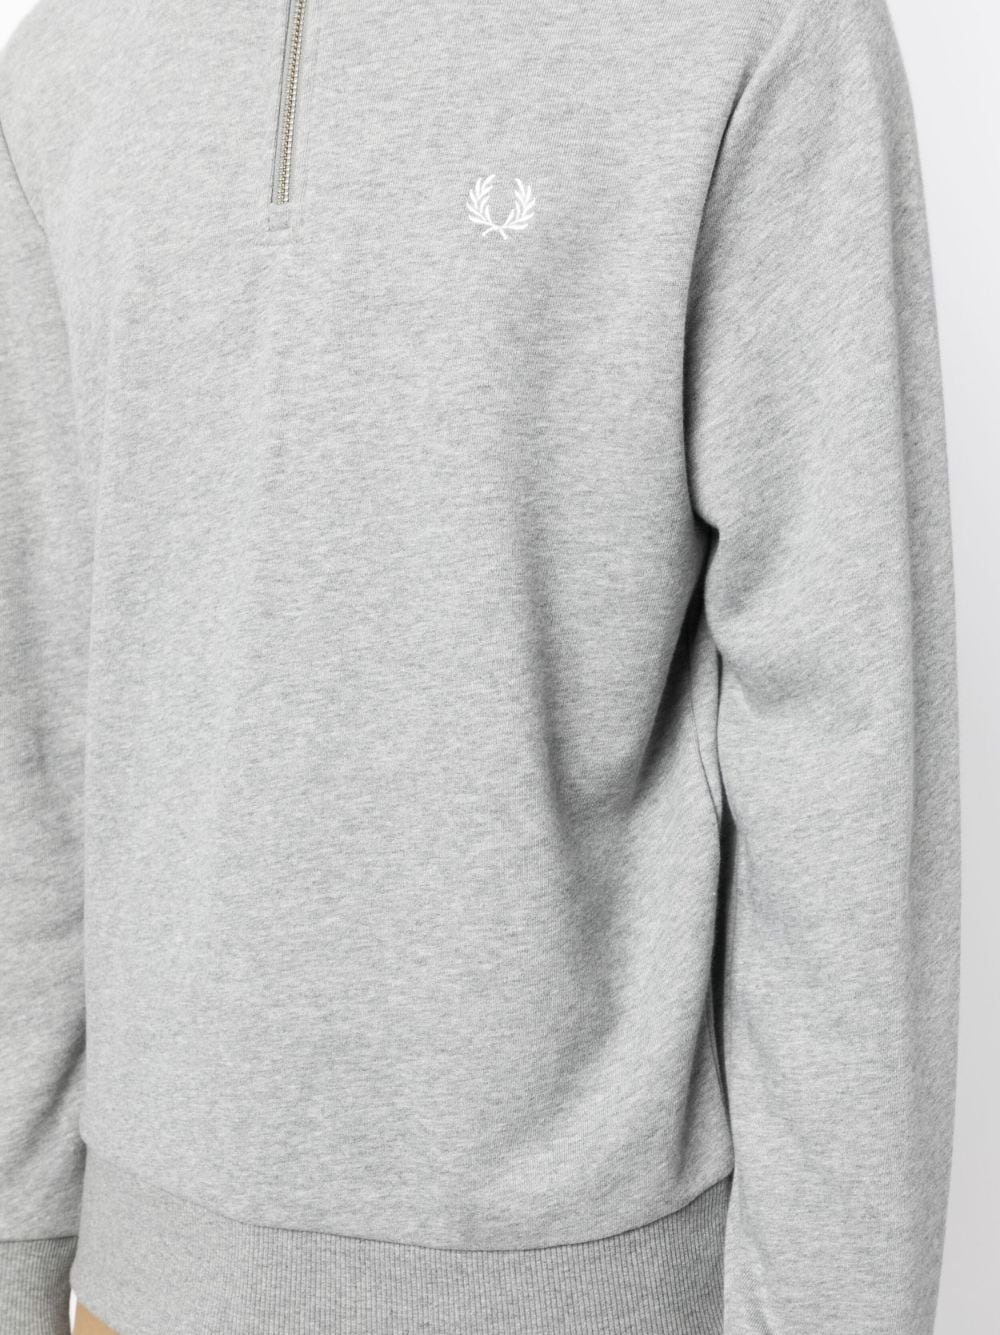 embroidered-logo zipped sweatshirt - 5